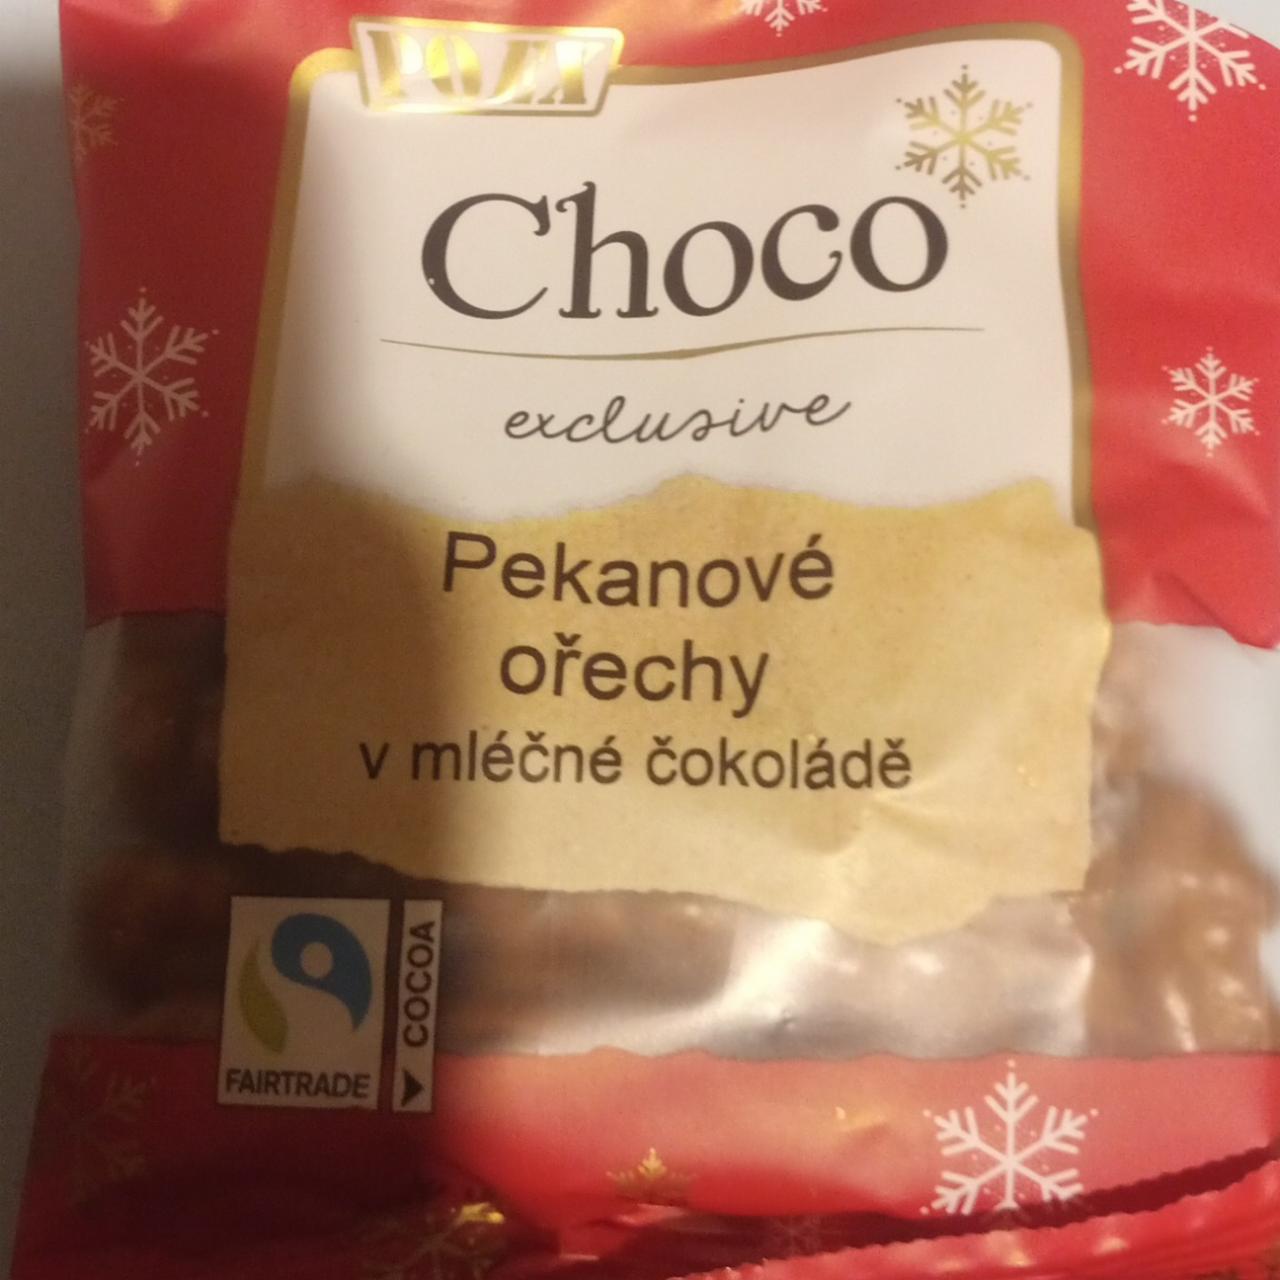 Fotografie - Pekanové ořechy v mléčné čokoládě Choco exclusive